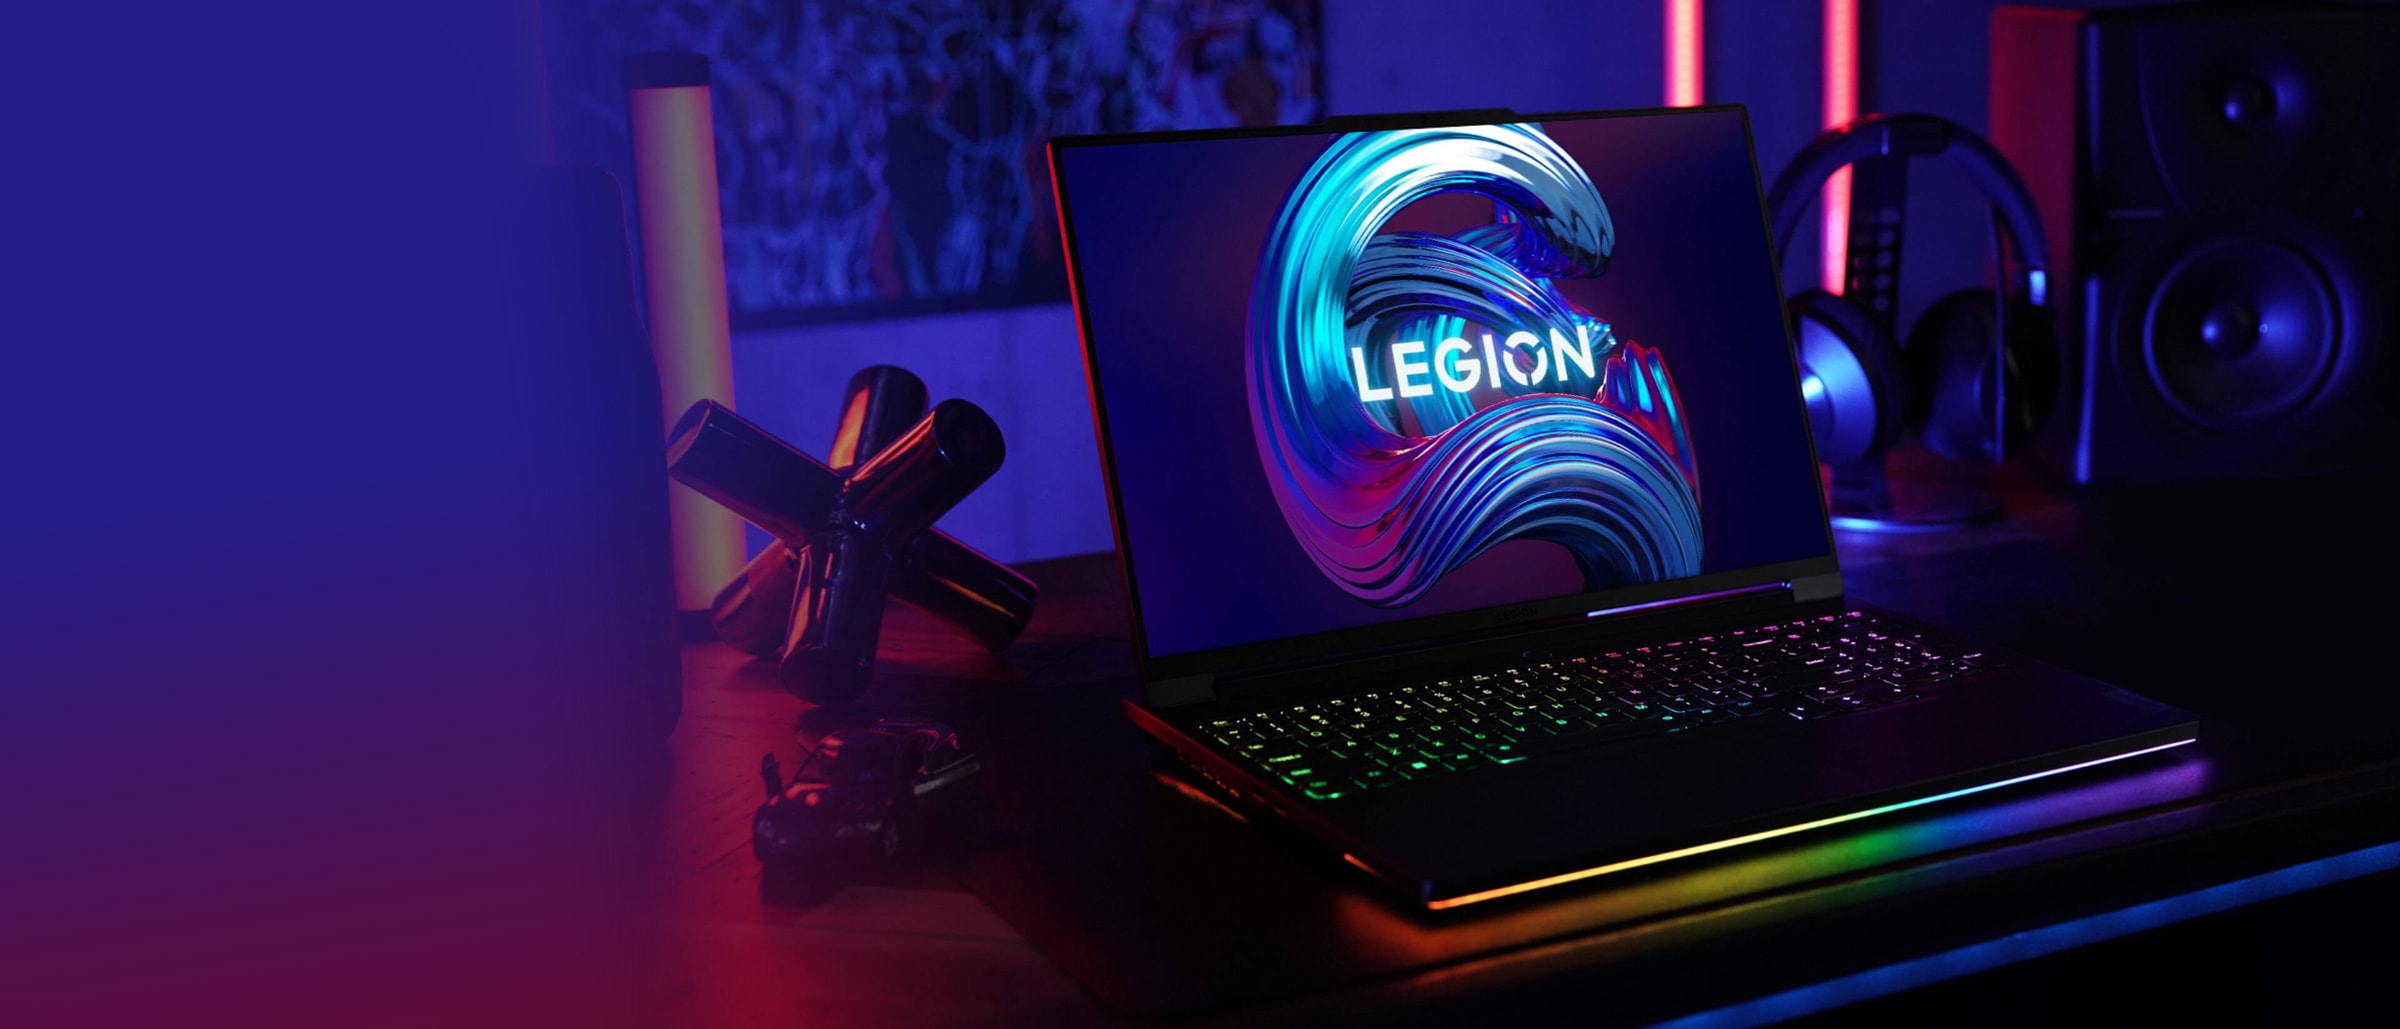 Vedere frontală a laptopului Lenovo Legion deschis la 90 de grade, care arată tastatura, ecranul de afișare și ușor înclinat pentru a arăta porturile din partea stângă.